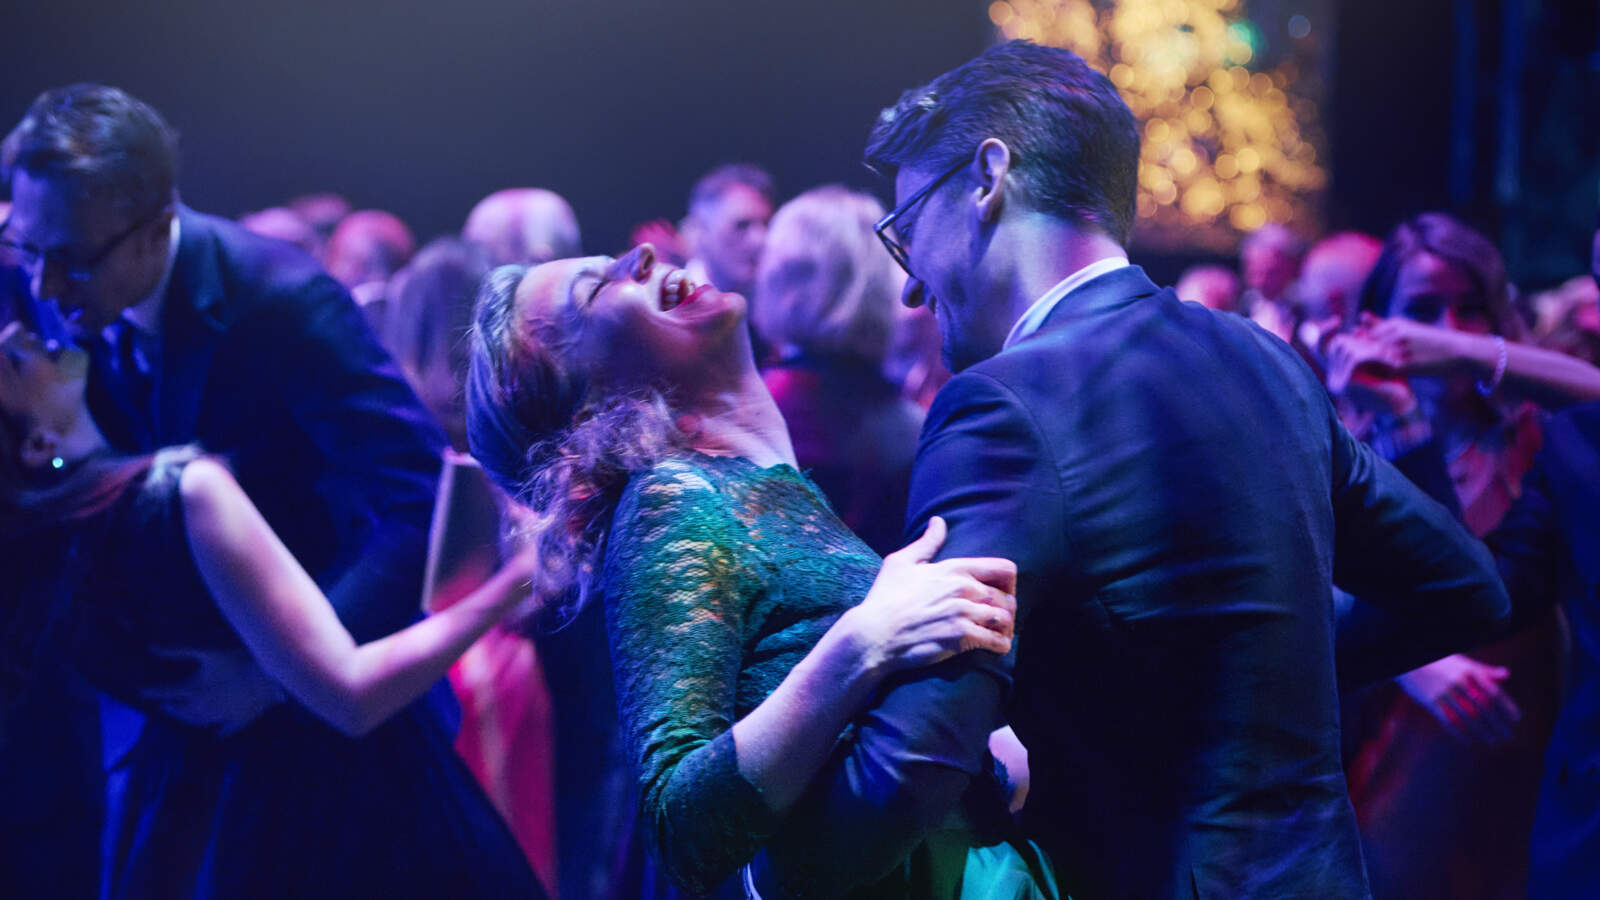 Många par dansar i en balsal under lila ljus. En av paret i förgrunden lutar sig bakåt medan hennes partner håller i henne.